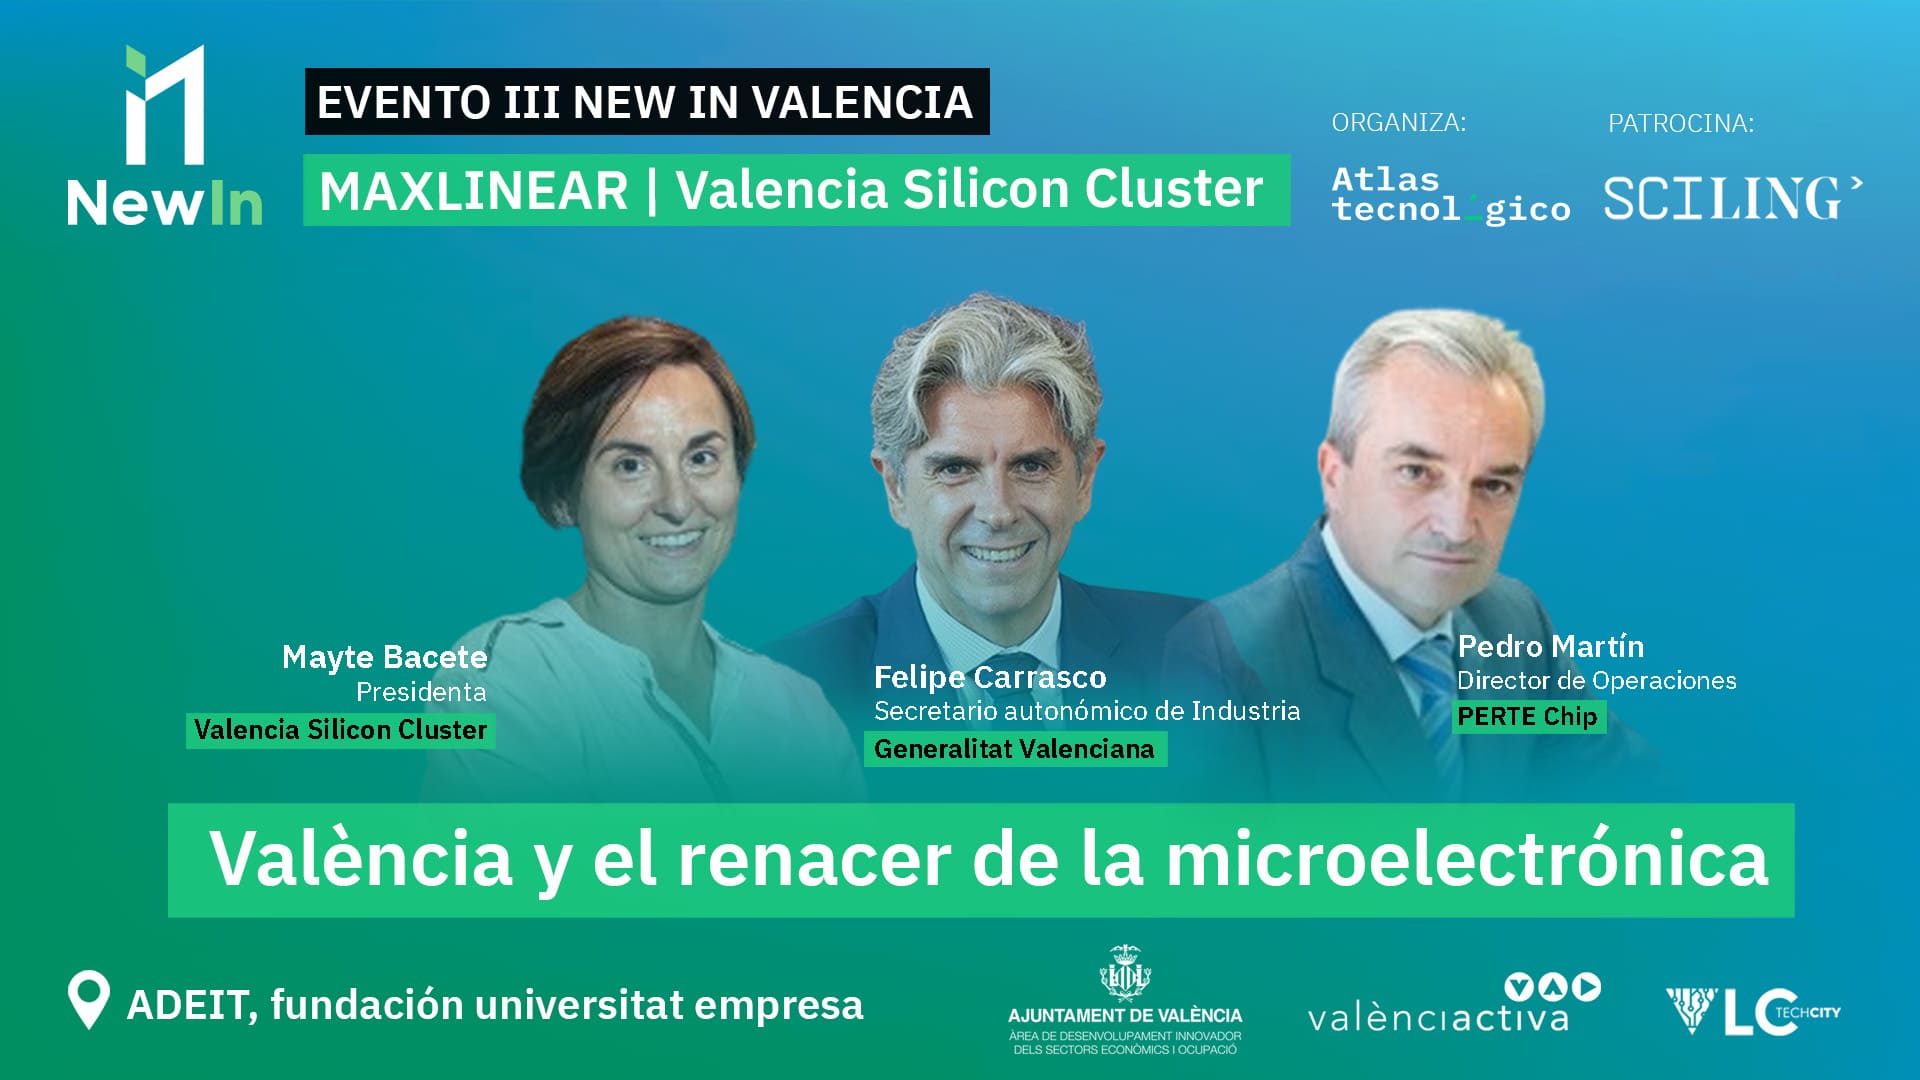 El Perte CHIP y la Generalitat se suman al evento New in València para respaldar al Silicon Cluster